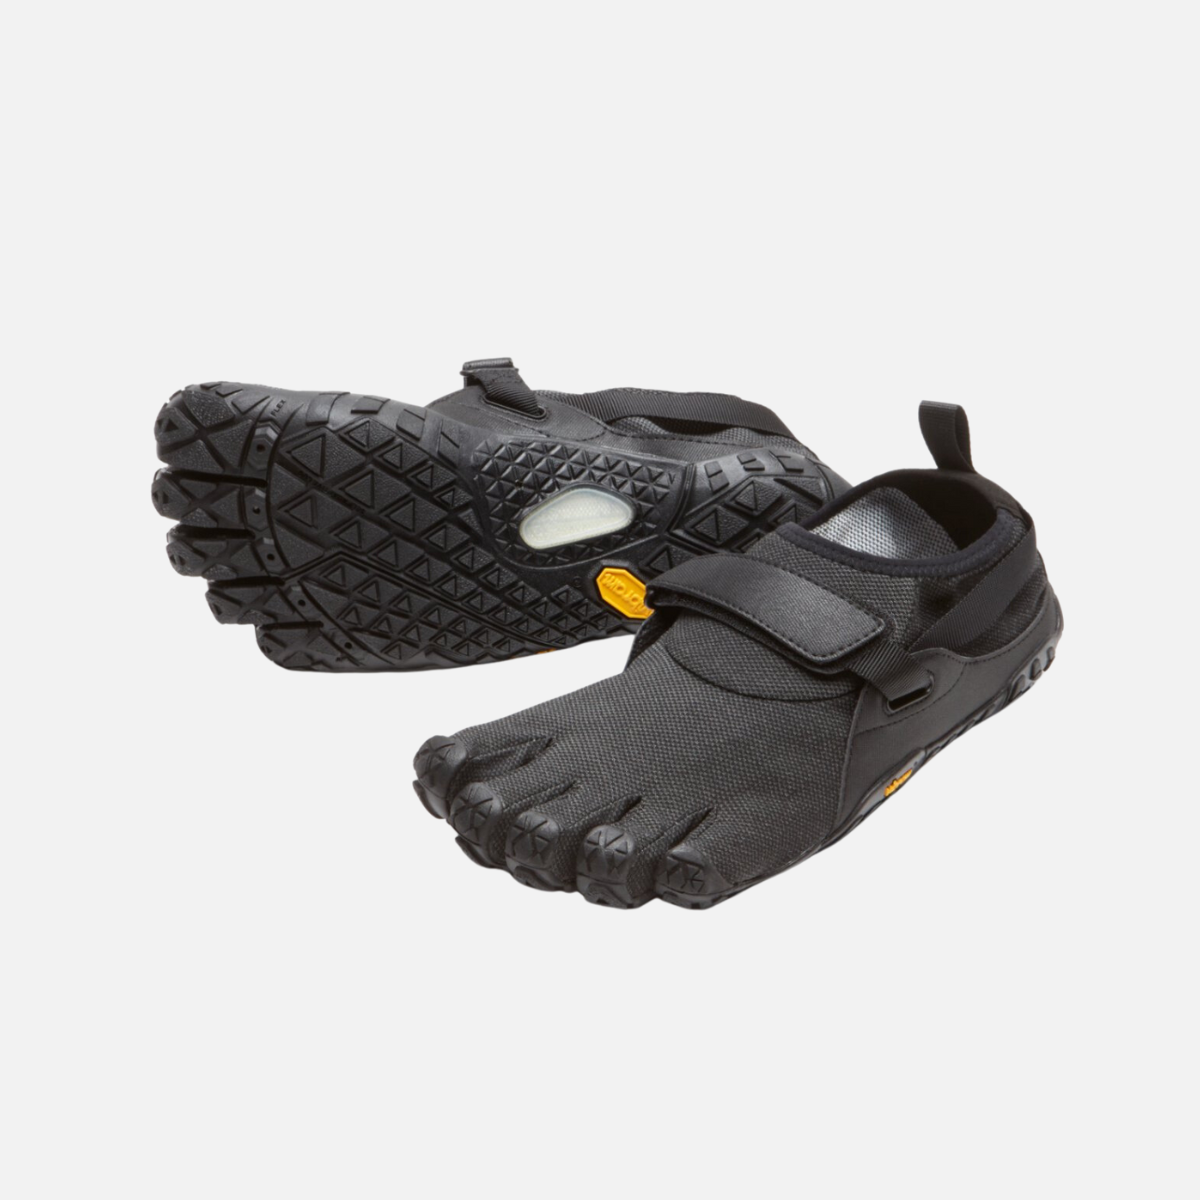 Vibram Spyridon EVO Men's Hiking Shoes - Black